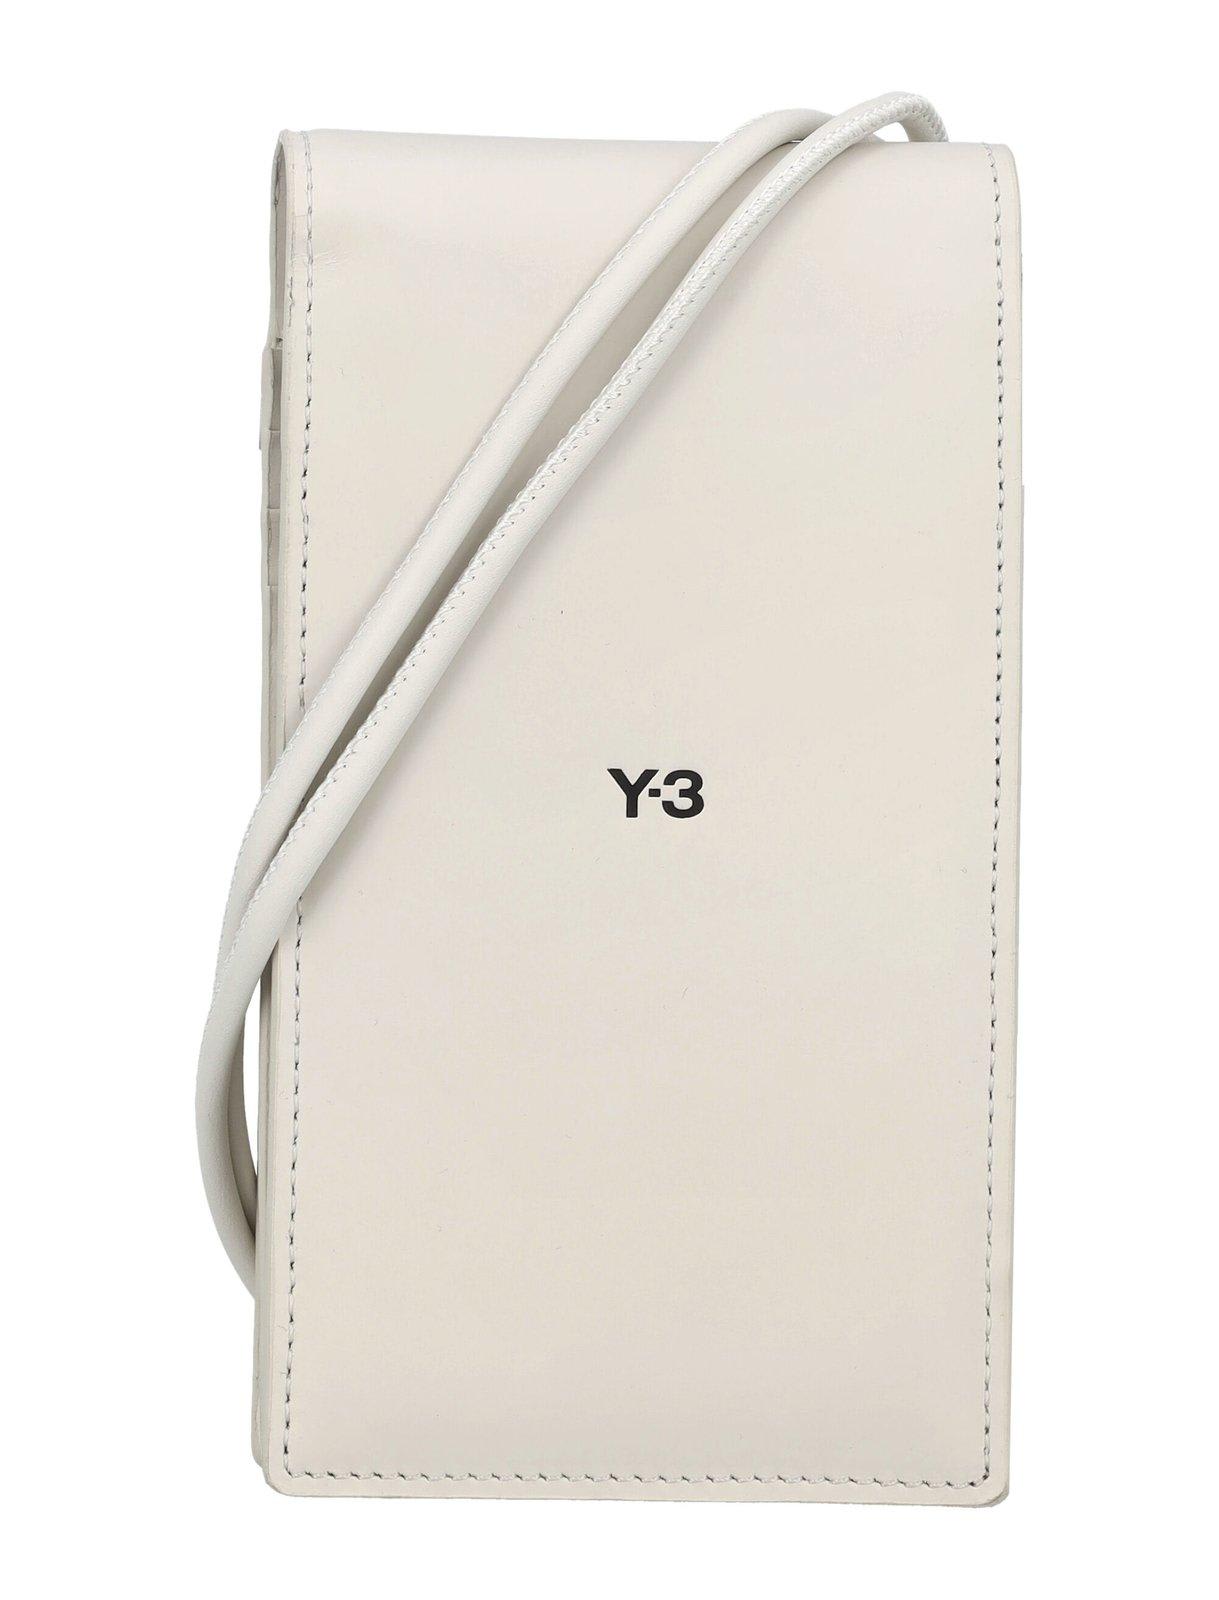 Y-3 Logo Printed Foldover Top Phone Case